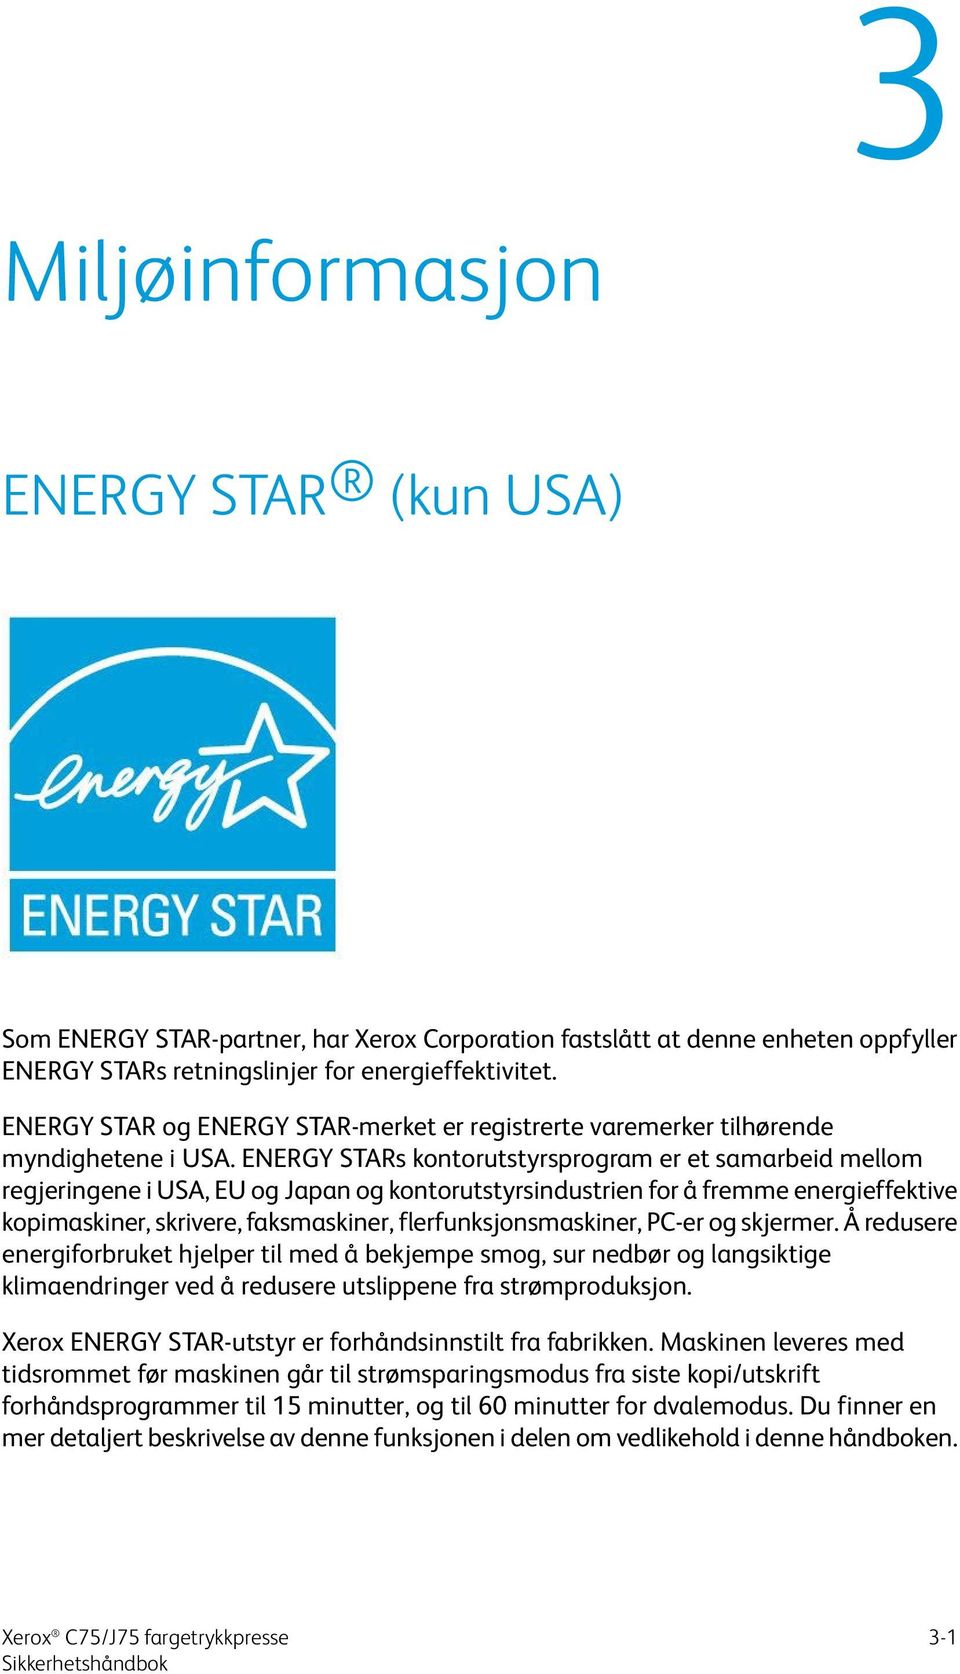 ENERGY STARs kontorutstyrsprogram er et samarbeid mellom regjeringene i USA, EU og Japan og kontorutstyrsindustrien for å fremme energieffektive kopimaskiner, skrivere, faksmaskiner,